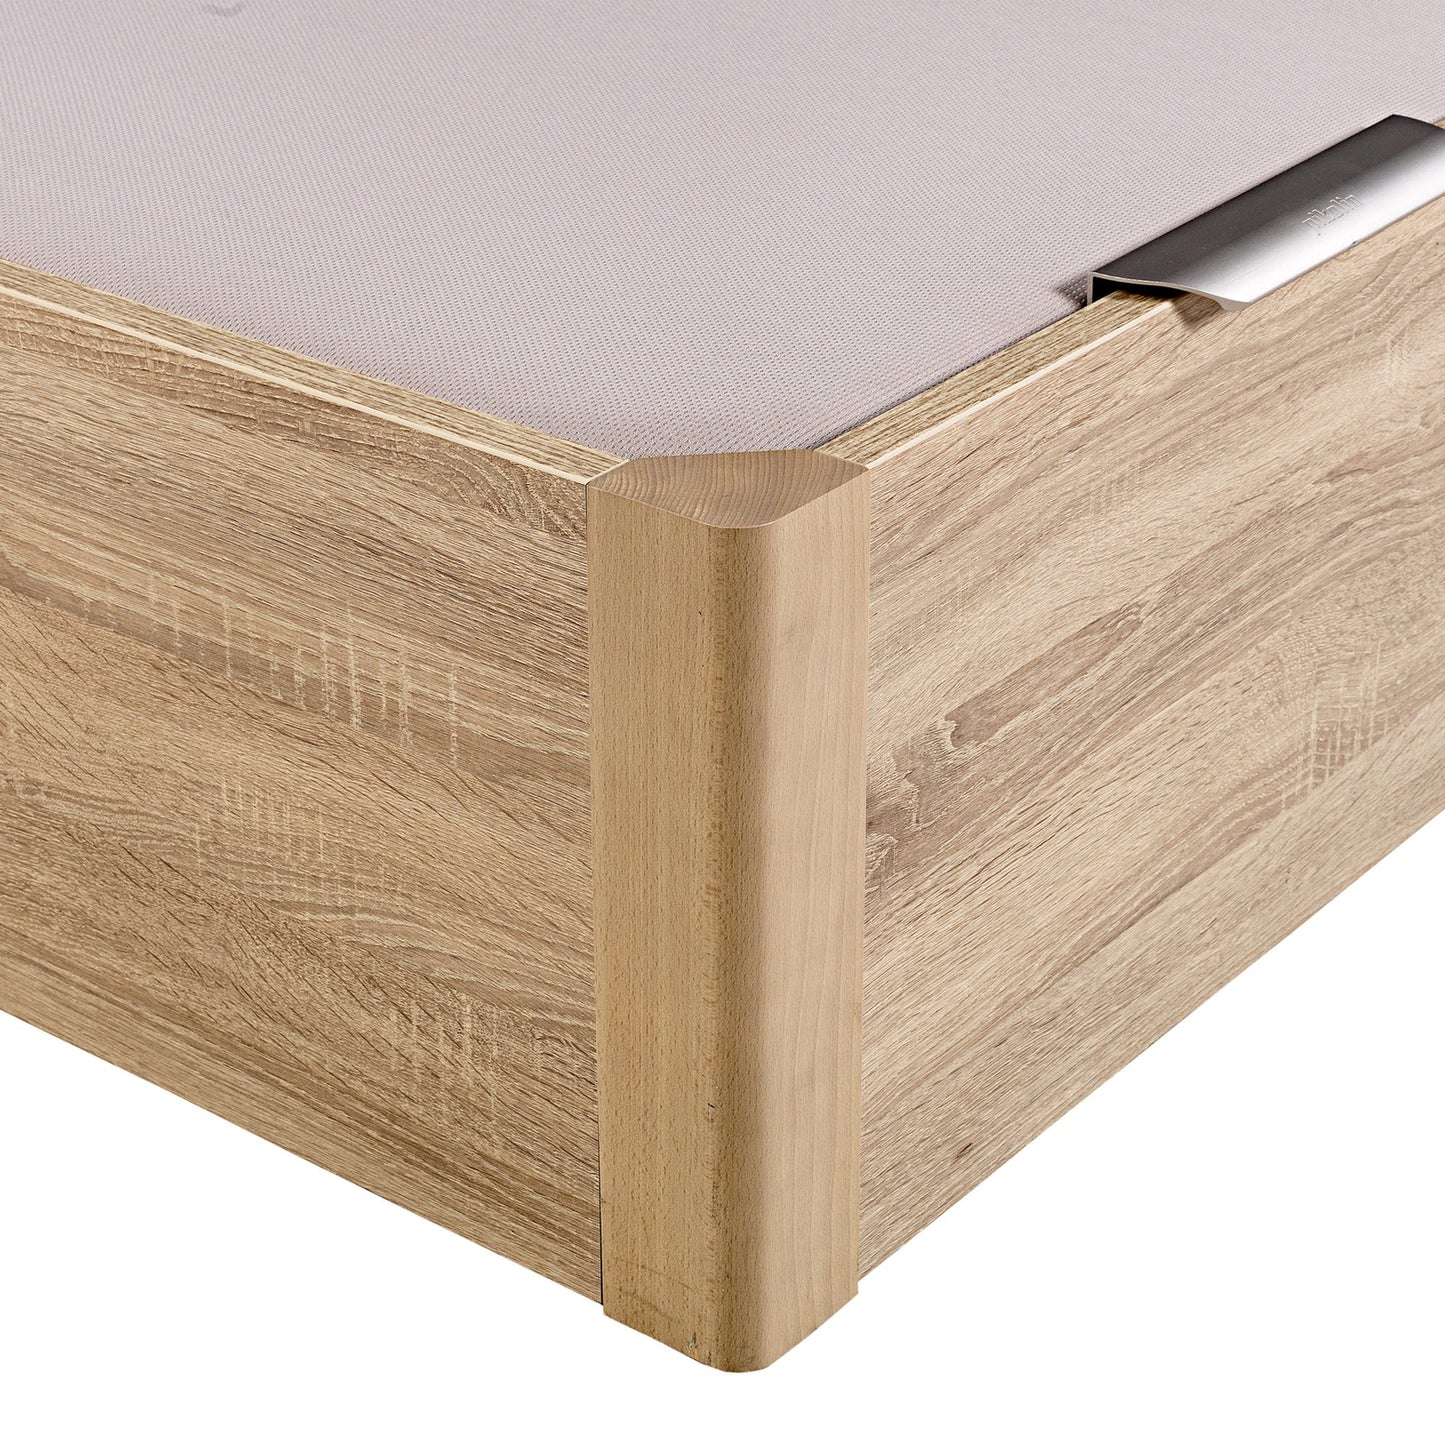 Canapé abatible de madera de alta capacidad tapa doble de color natural - DESIGN - 150x200